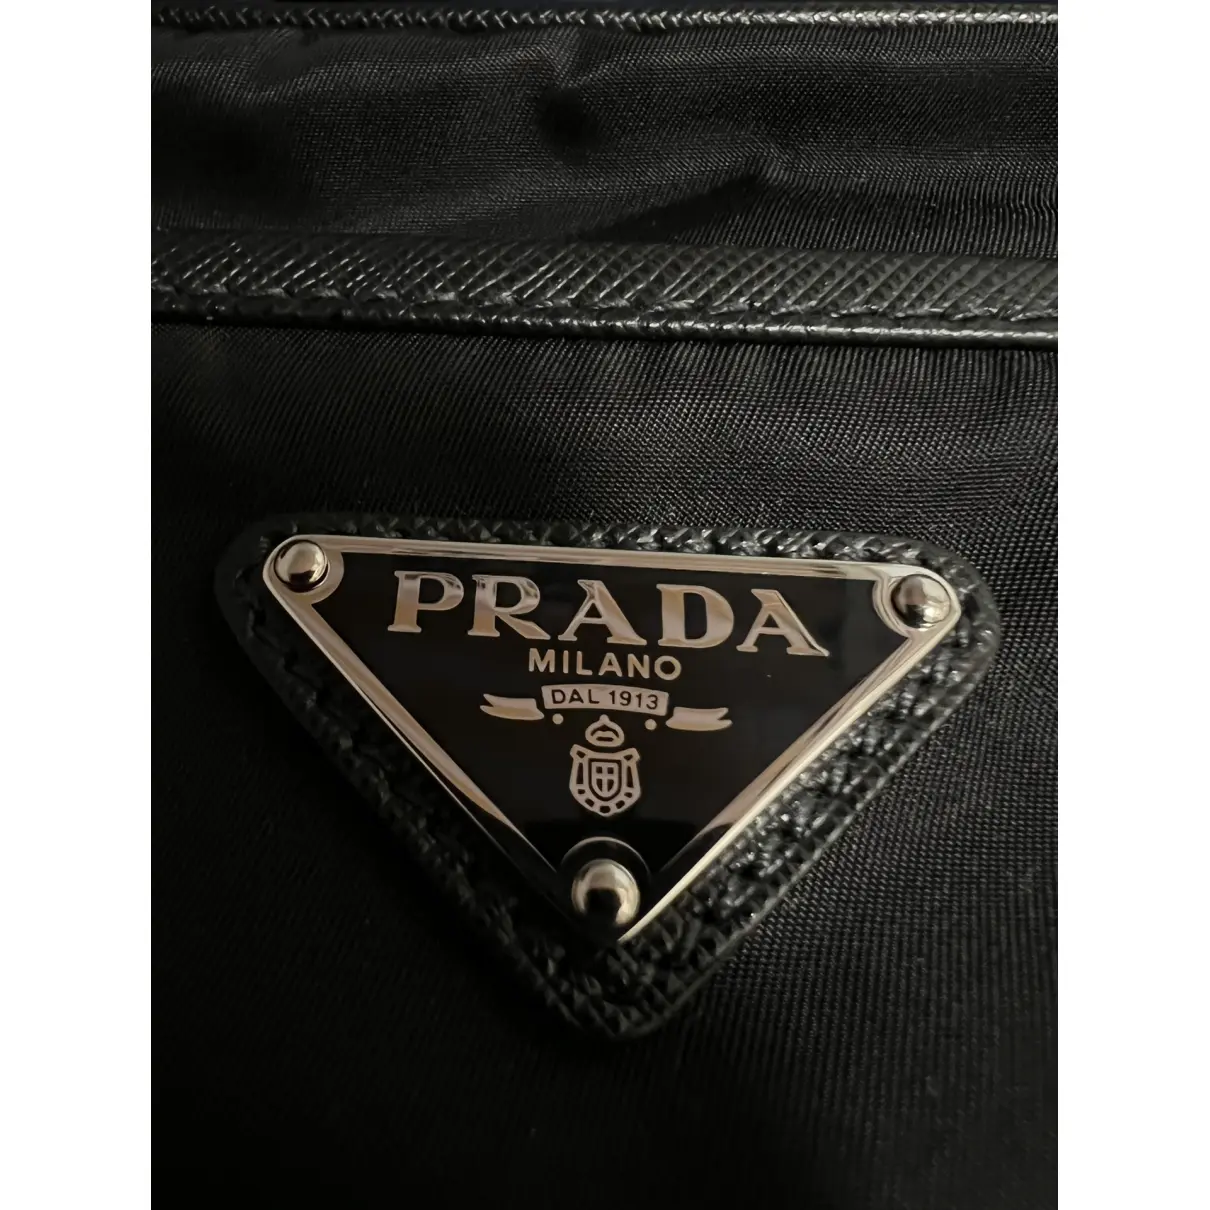 Buy Prada Cloth weekend bag online